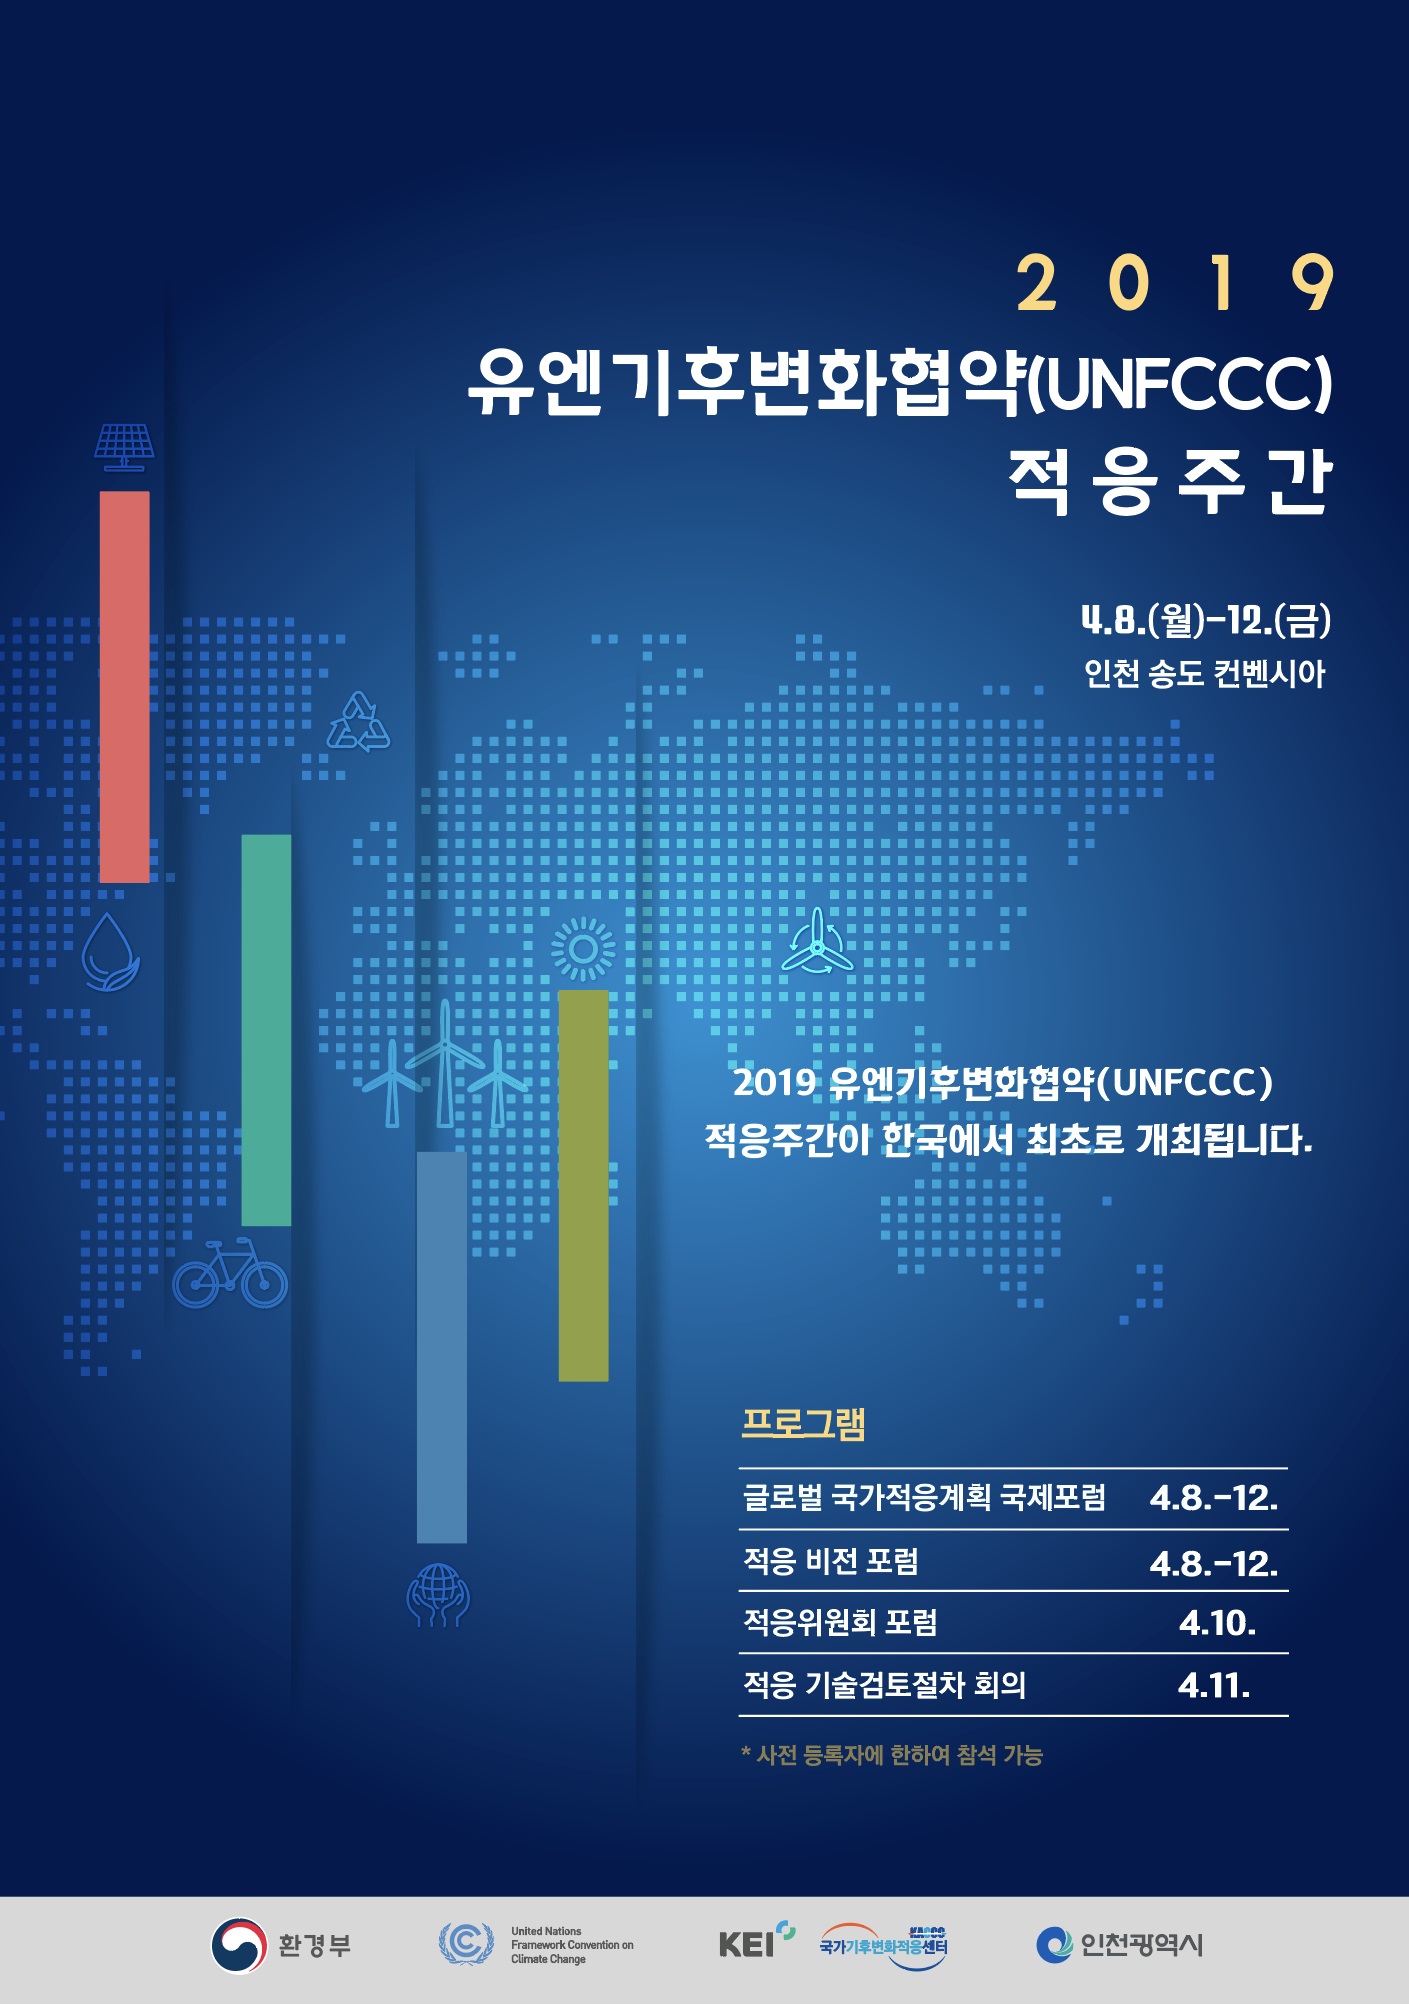 2019 유엔기후변화협약 적응 주간

ㅇ (행사명) 2019 유엔기후변화협약 적응 주간(영문 : Korea Global Adaptation Week 2019)
ㅇ (목적) 적응 관련 다양한 이해관계자간 파트너십 제고 및 경험 공유 촉구를 위한 UNFCCC 최초로 글로벌 ‘기후변화 적응 주간’ 개최
ㅇ (기간/장소) '19.4.8(월)~12(금) / 인천 송도 컨벤시아
ㅇ (주제) 미래지향적 기후변화 적응
ㅇ (주최) 환경부 
ㅇ (주관) 유엔기후변화협약, 인천광역시, 국가기후변화적응센터 
ㅇ (참석) 국내?외 정부, 학계, 국제기구 등 유관기관 전문가 약 500여명

프로그램
글로벌 국가적응계획 국제포럼 4.8~12
적응 비전 포럼 4.8 ~12
적응위원회 포럼 4.10
적응 기술검토절차 회의 4.11
*사전 등록자에 한하여 참석 가능


